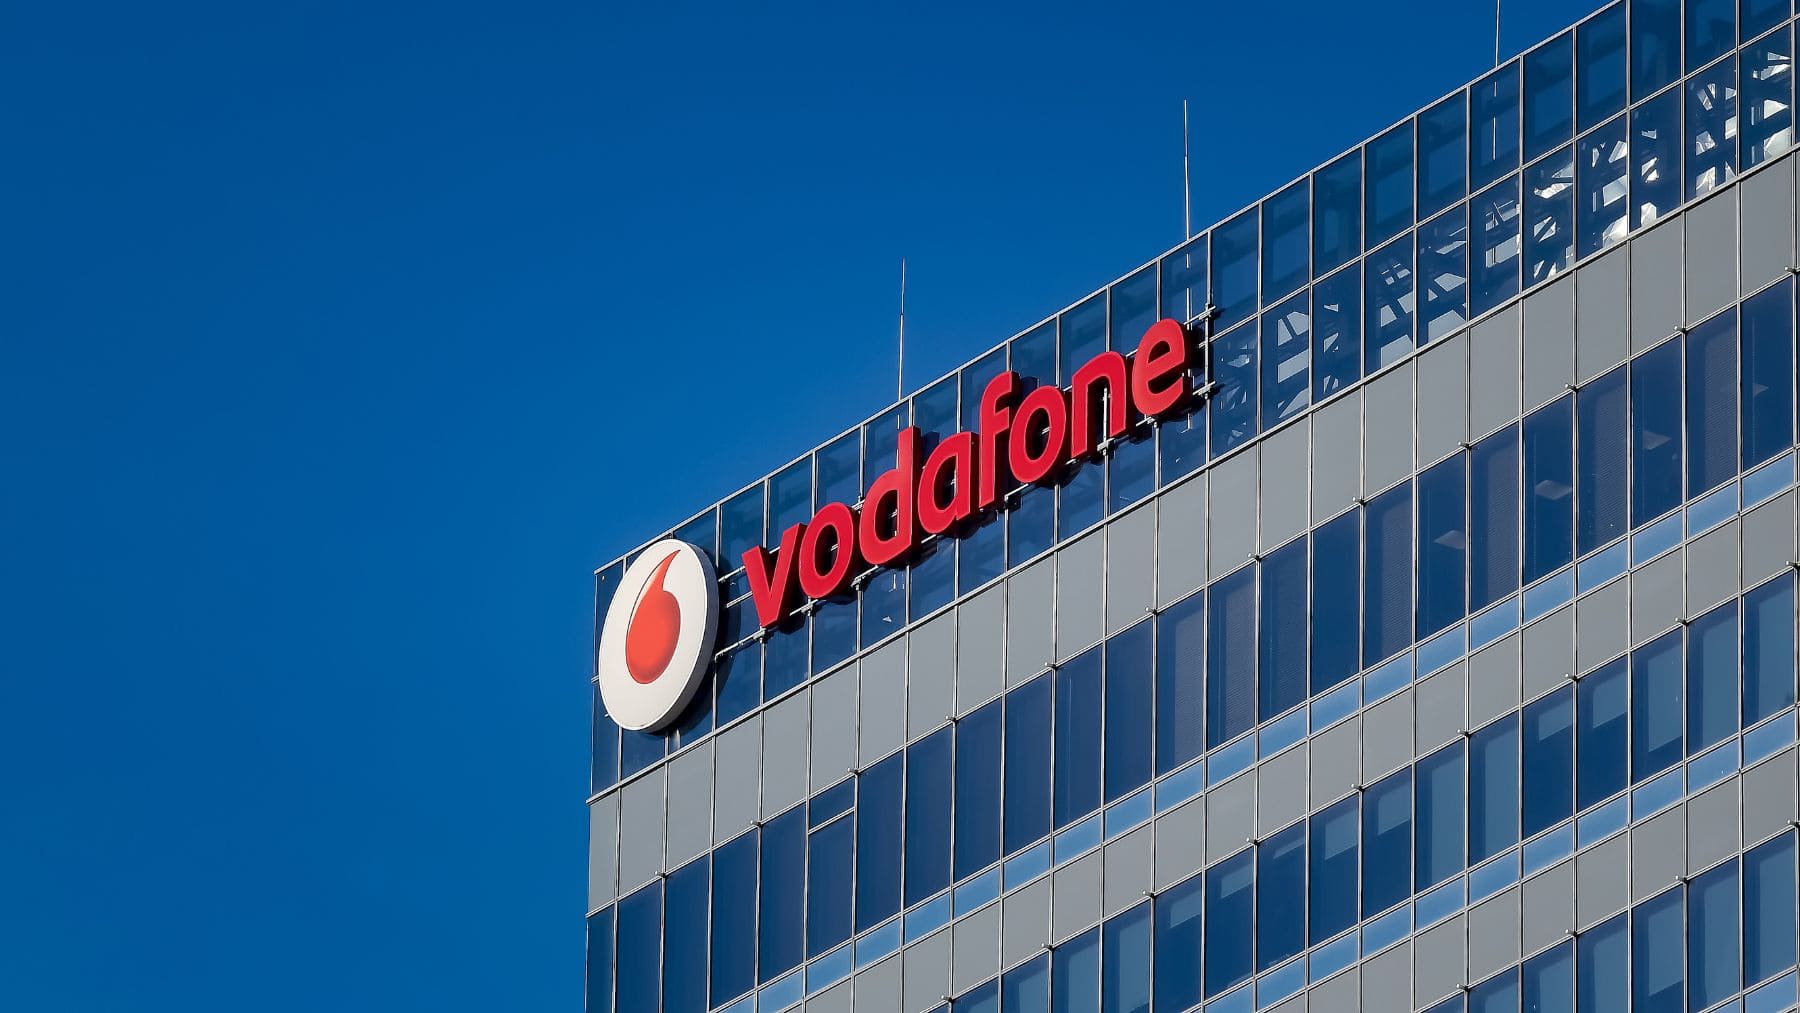 Autónomos Pymes Vodafone